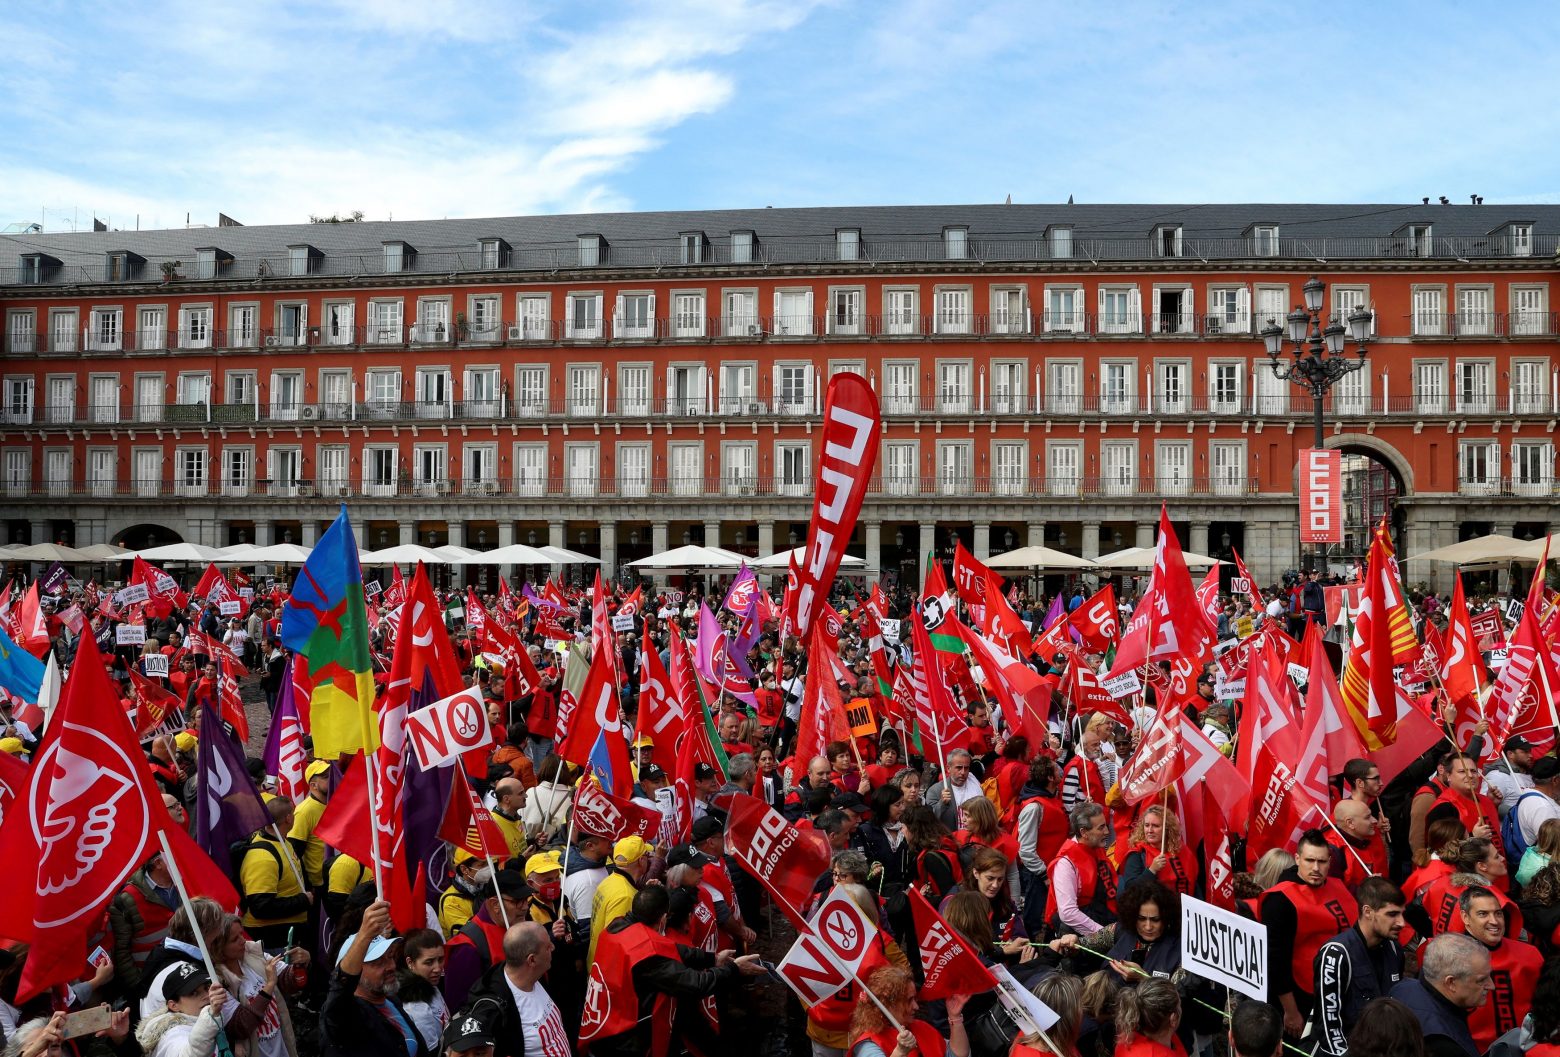 Ισπανία: Διαδήλωση στη Μαδρίτη για την αύξηση των μισθών – Τα συνδικάτα απειλούν να συνεχίσουν τις κινητοποιήσεις τους